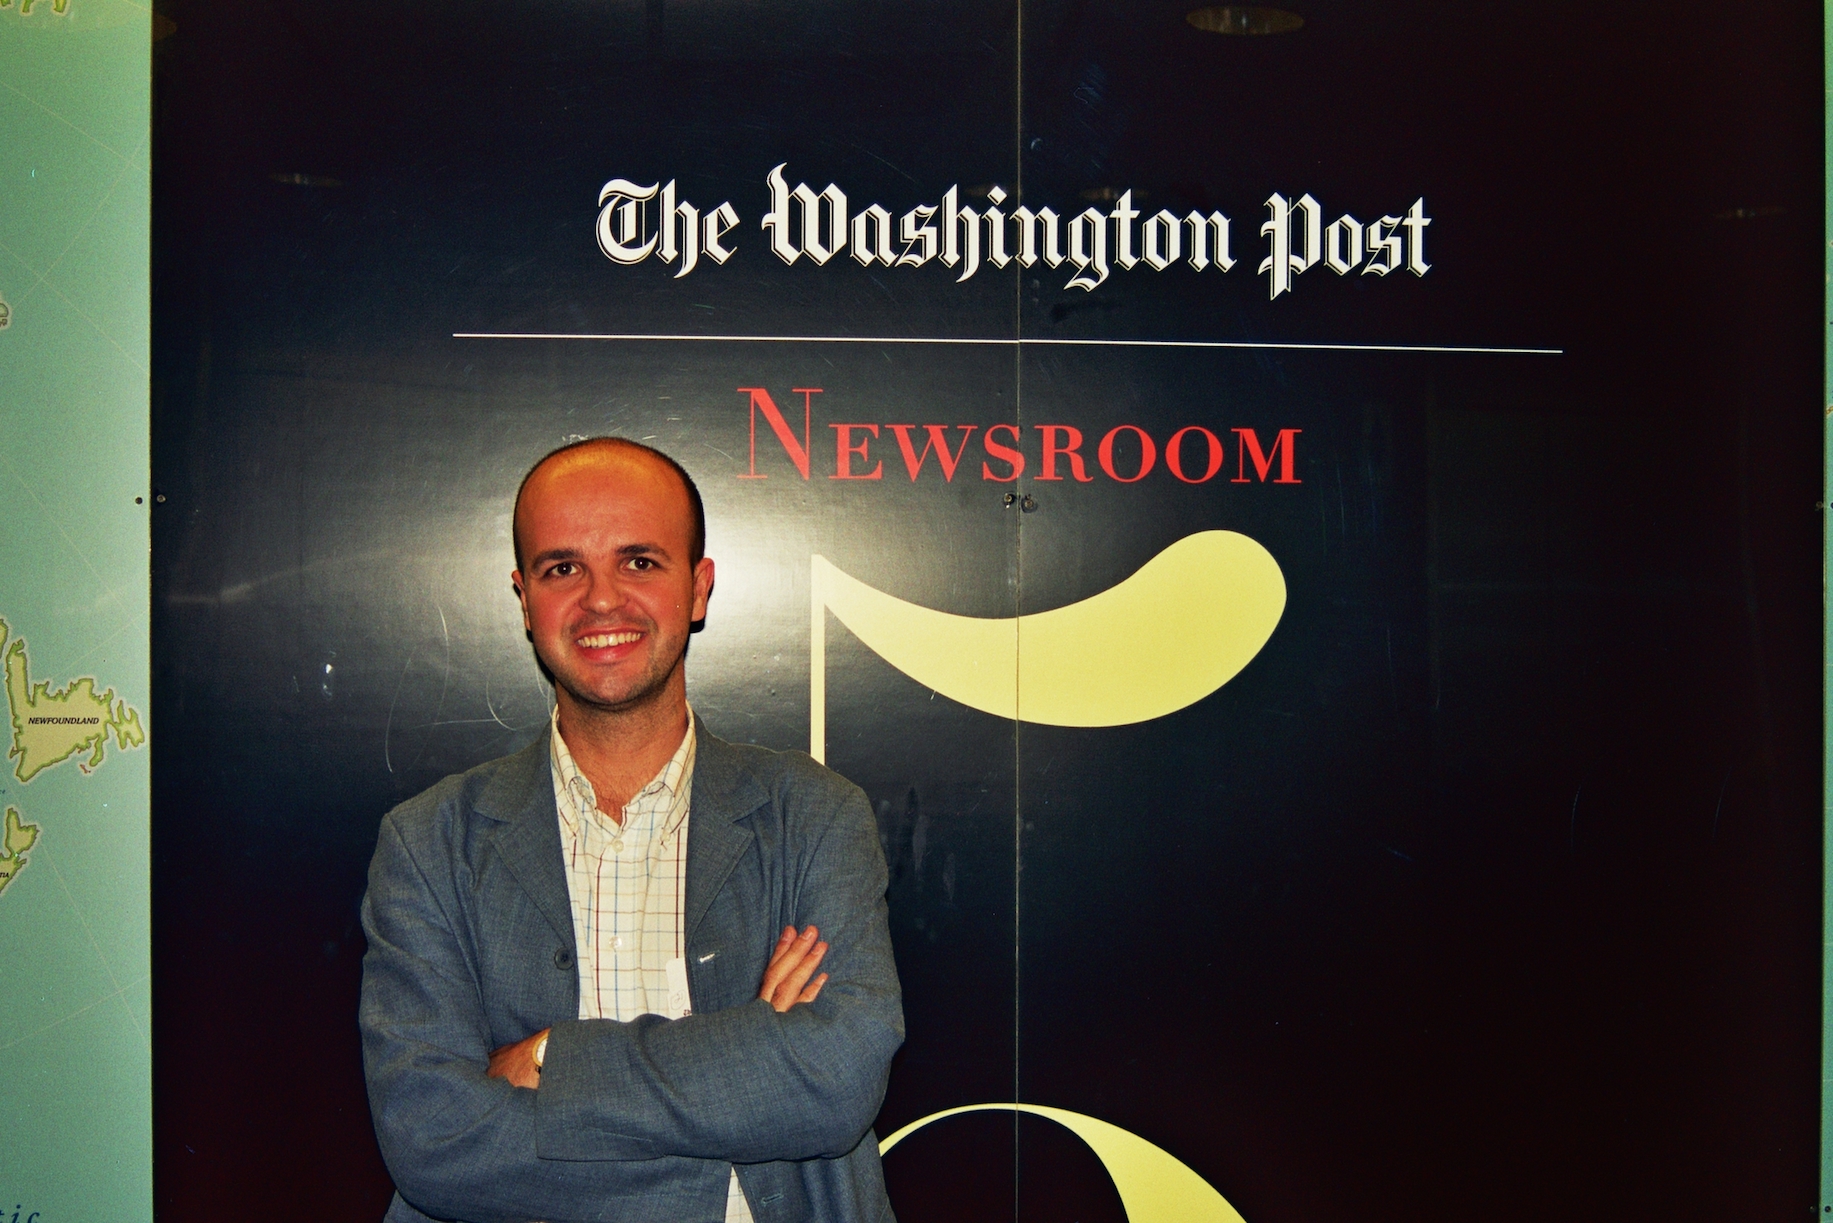 La tarde que visité ‘The Washington Post’